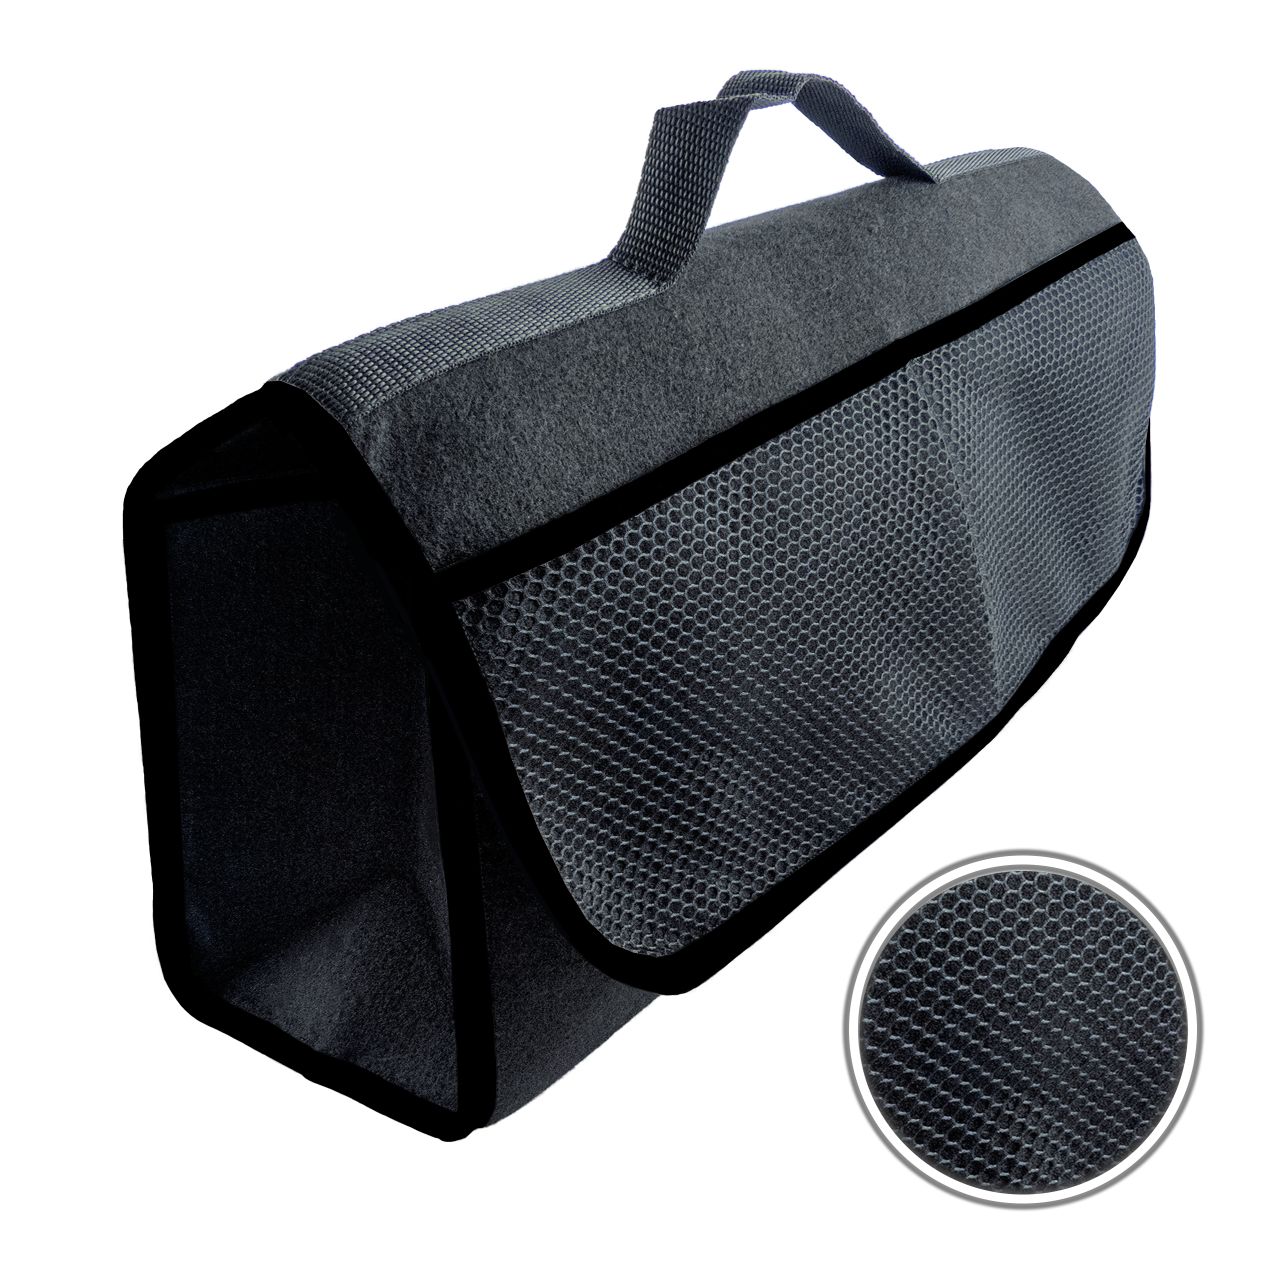 Kfz Basis Sicherheitsset mit Kofferraumtasche (Verbandtasche, Warnweste, Warndreieck, Kofferraumtasche)-1